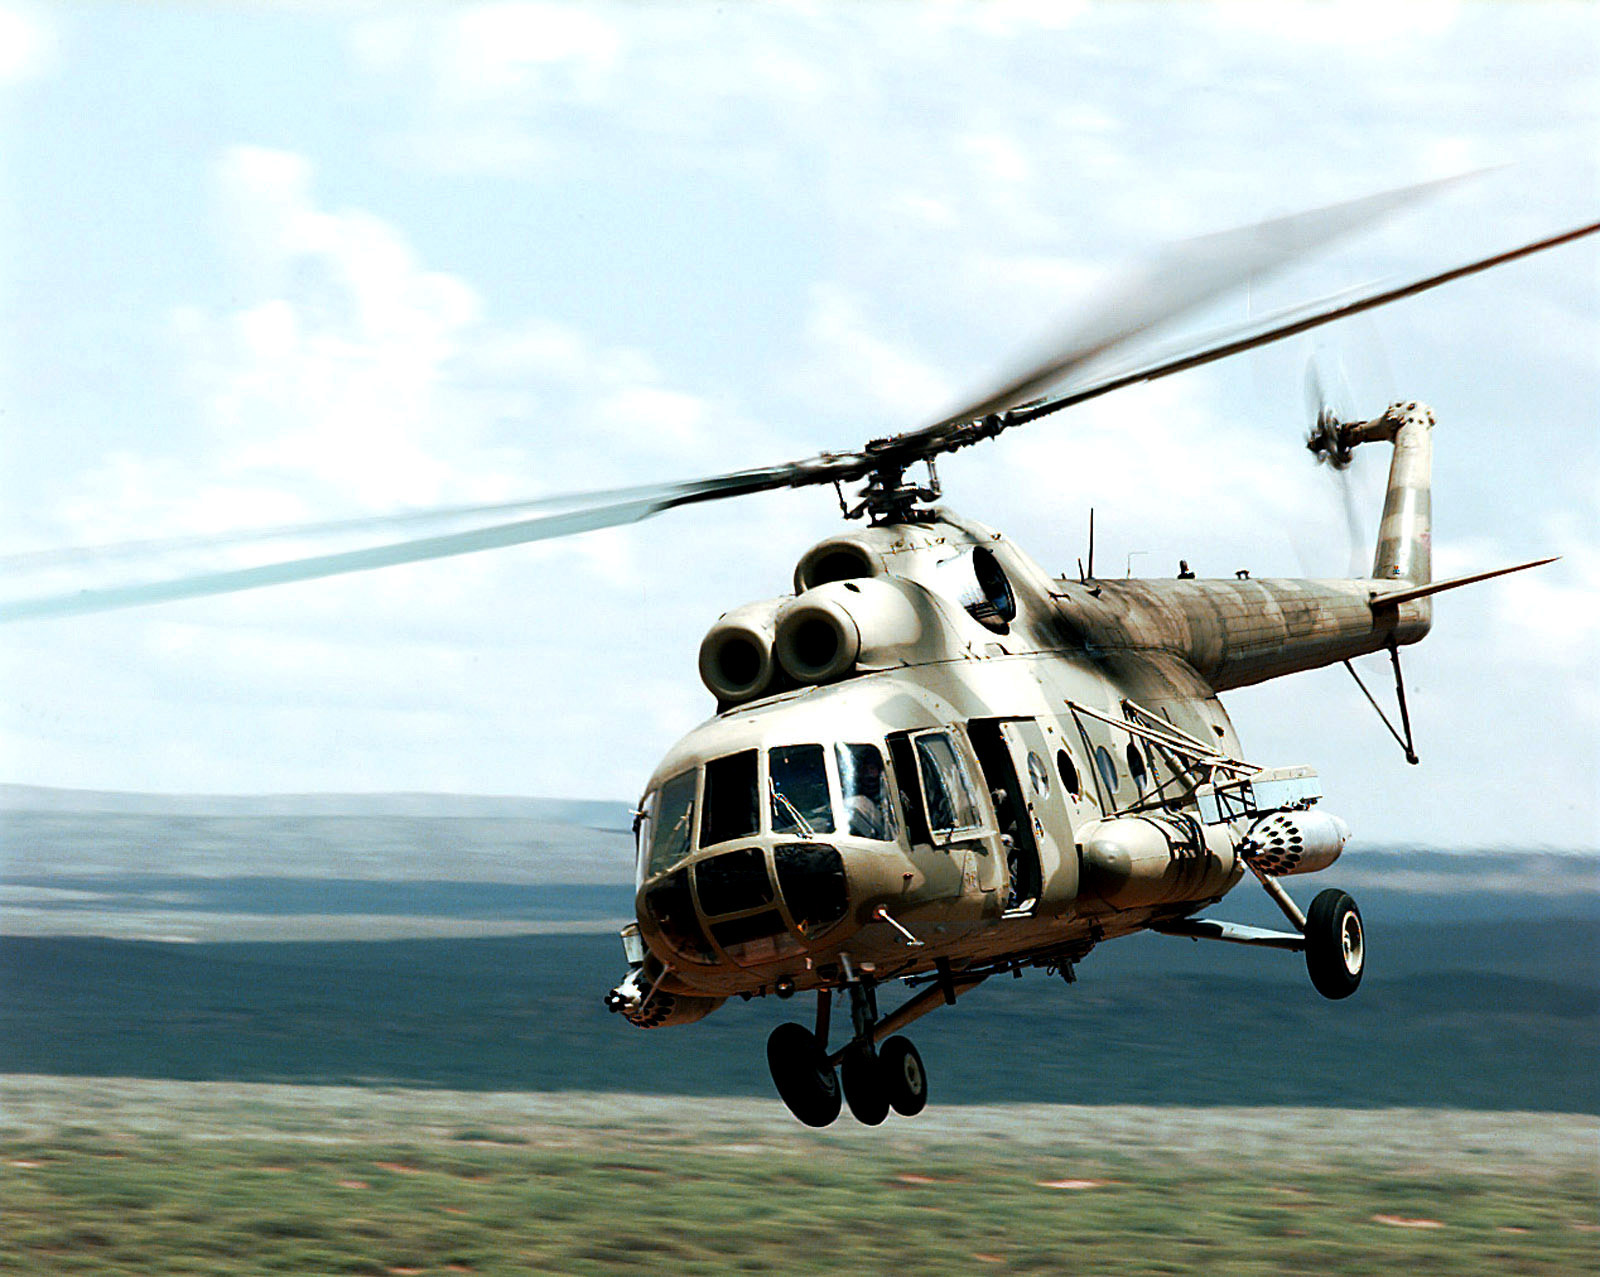 Госпогранслужба: Российский вертолет «МИ-8» нарушил воздушное пространство Украины